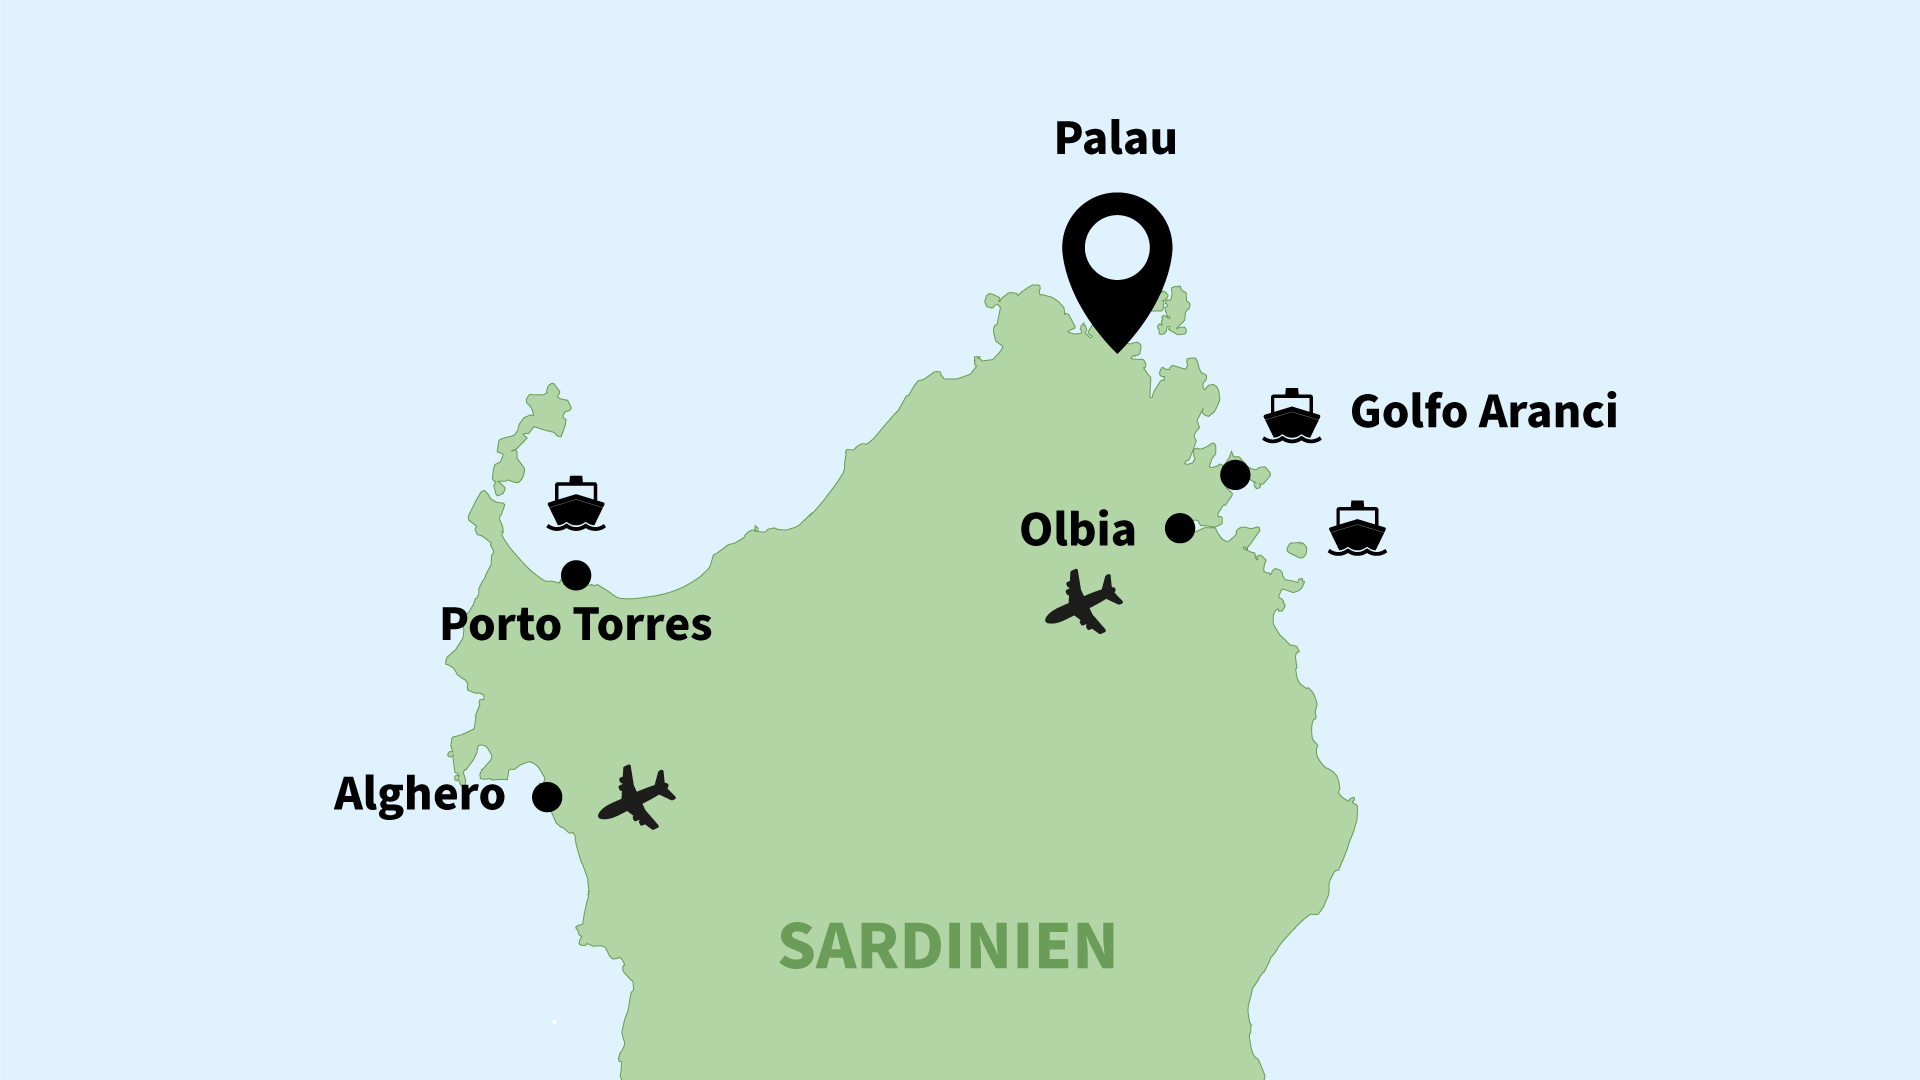 Anreise nach Palau/Sardinien